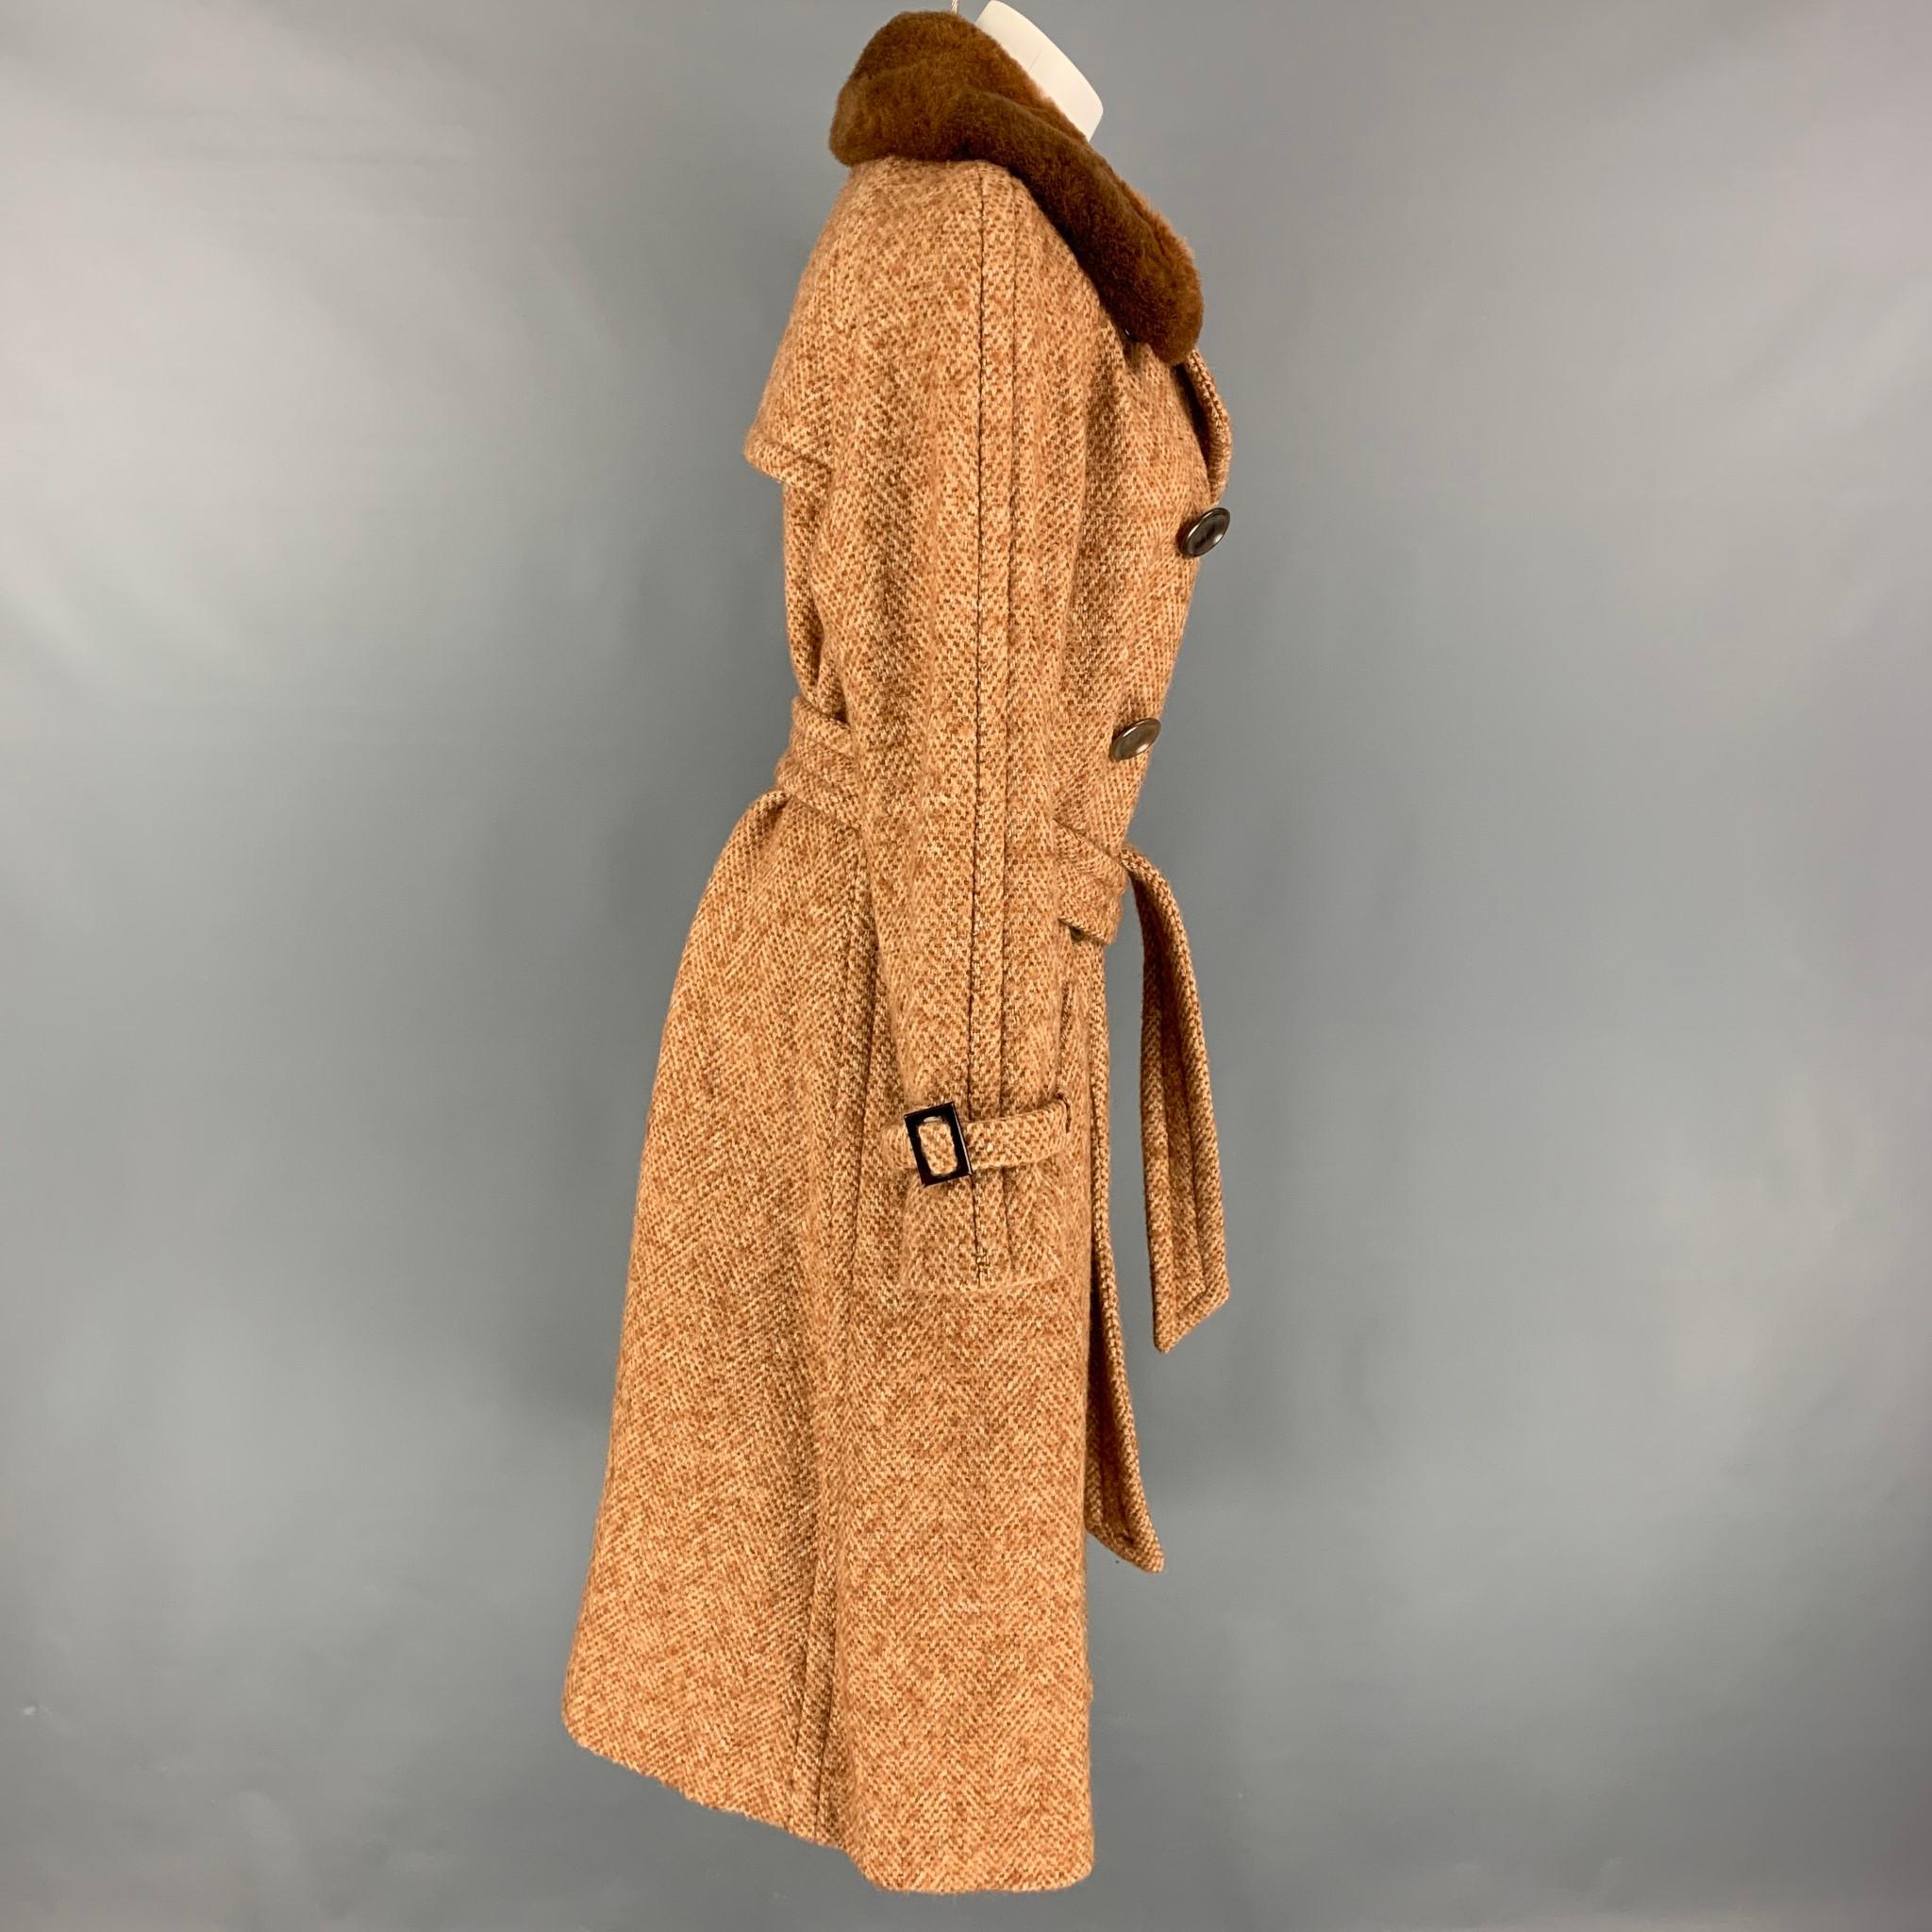 Beige MARC JACOBS - Manteau ceinturé en tweed mélangé de laine beige et brun clair, taille 12